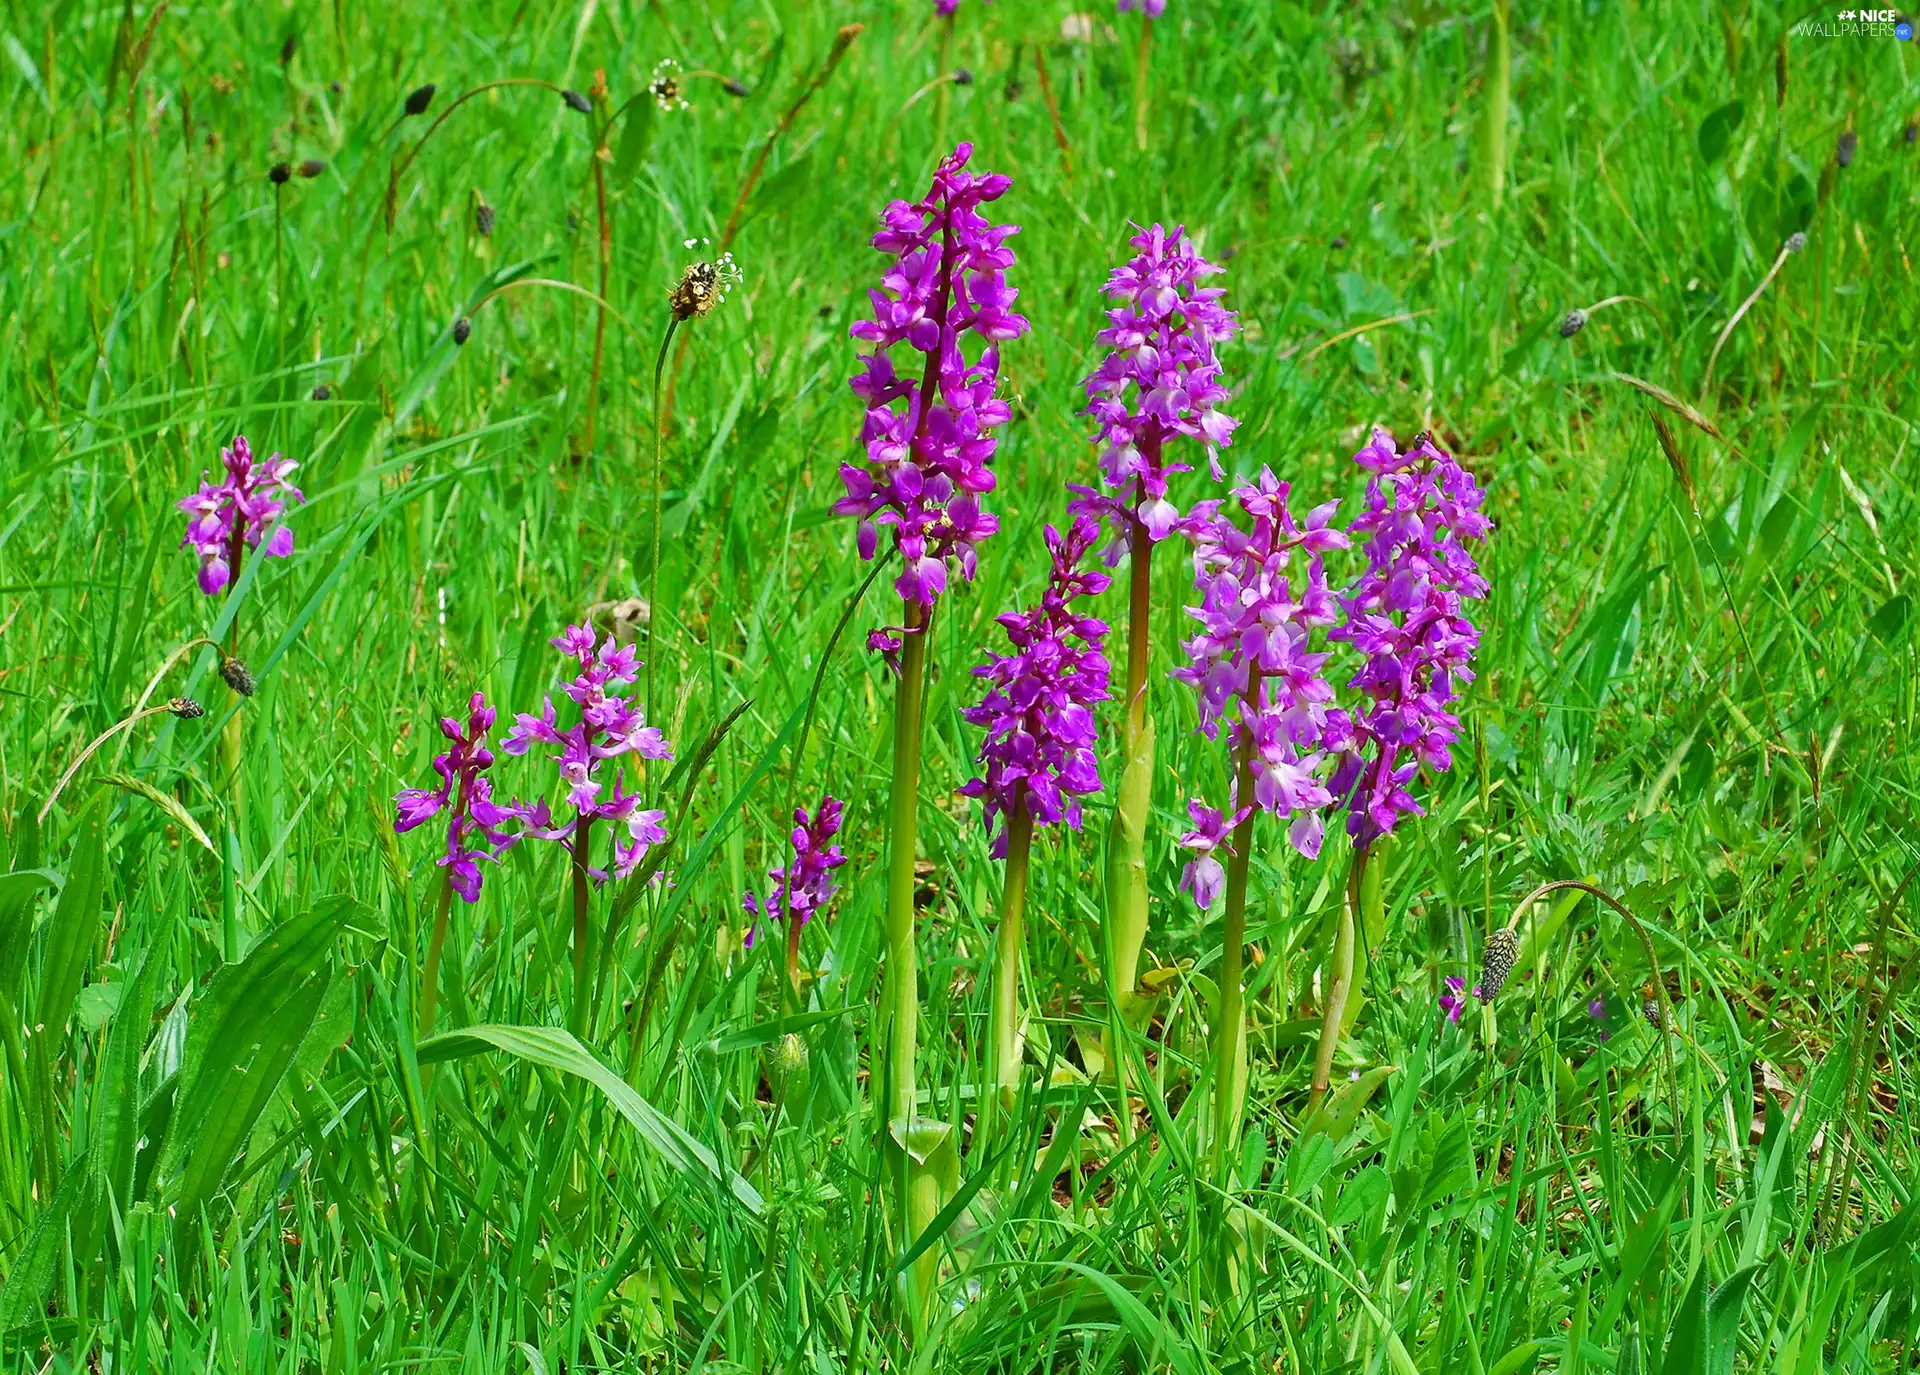 orchids, grass